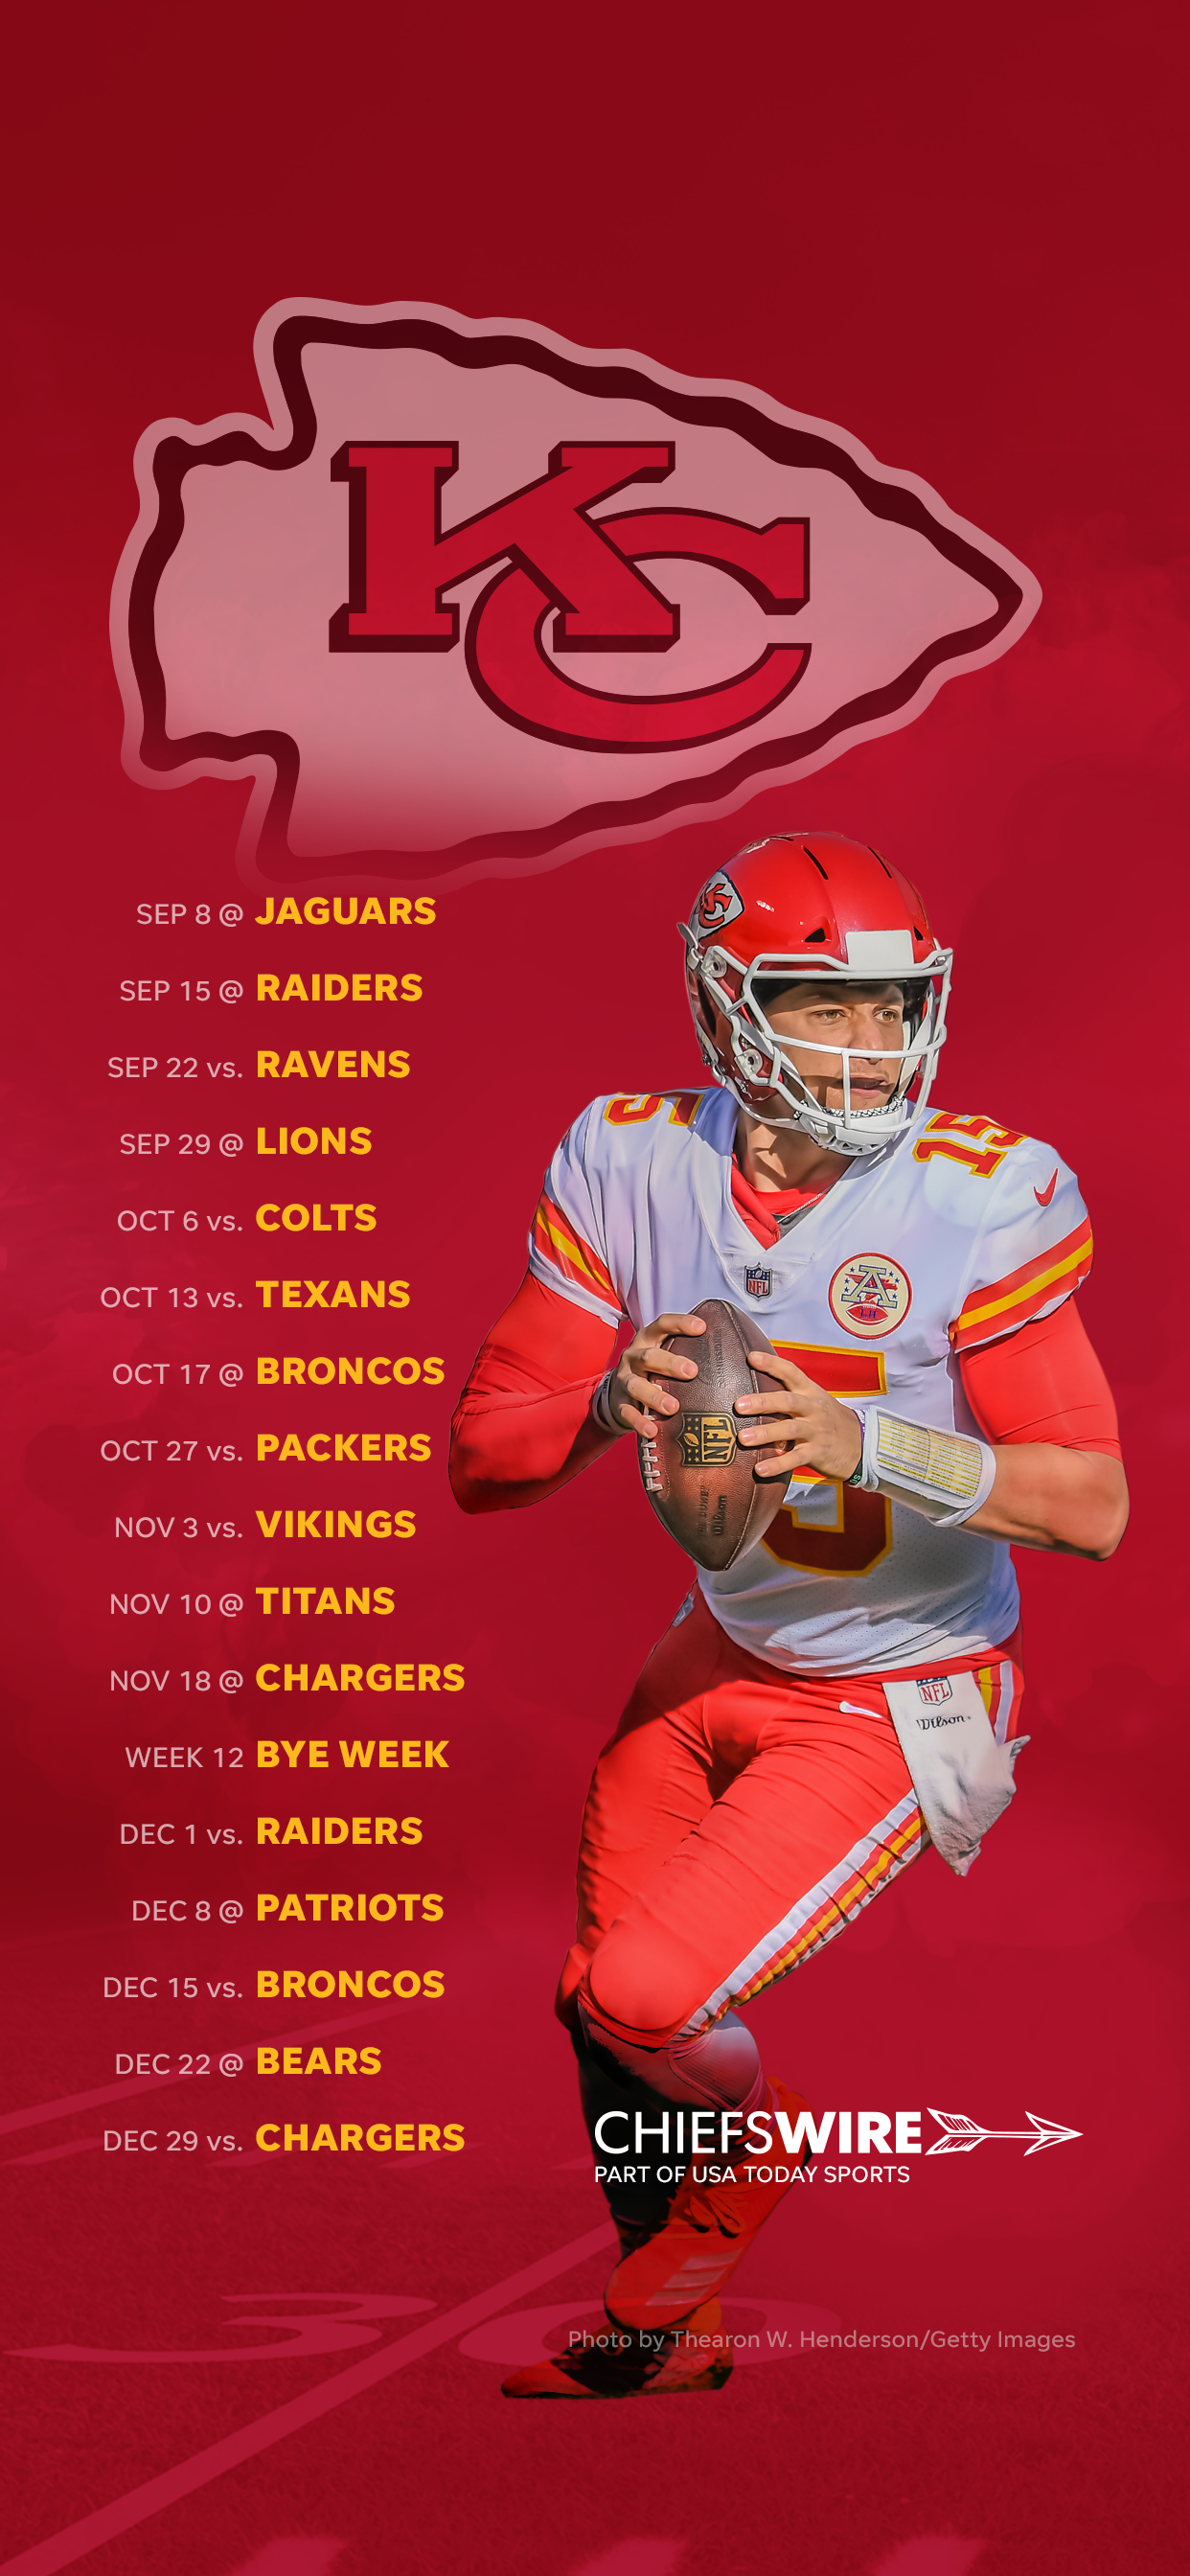 2019 Kansas City Chiefs Schedule: Downloadable Wallpaper